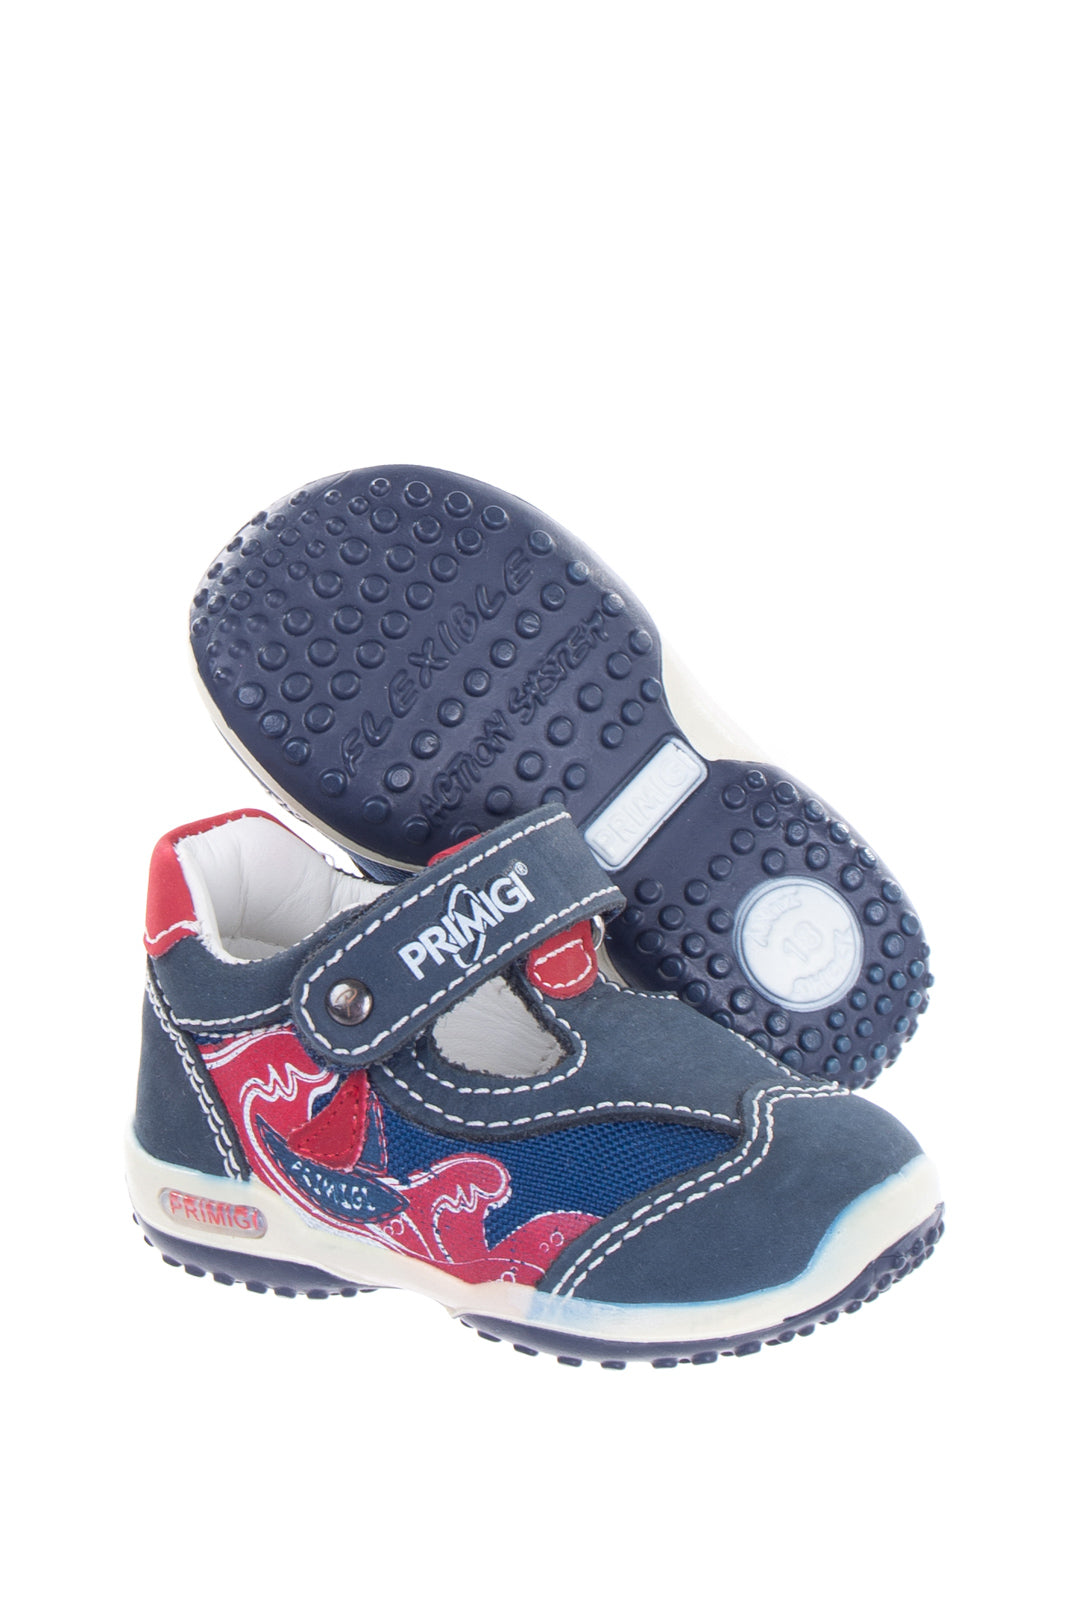 PRIMIGI Baby T-Bar Shoes Size - 18 UK 2 US 3 Antishock Flexible System gallery main photo